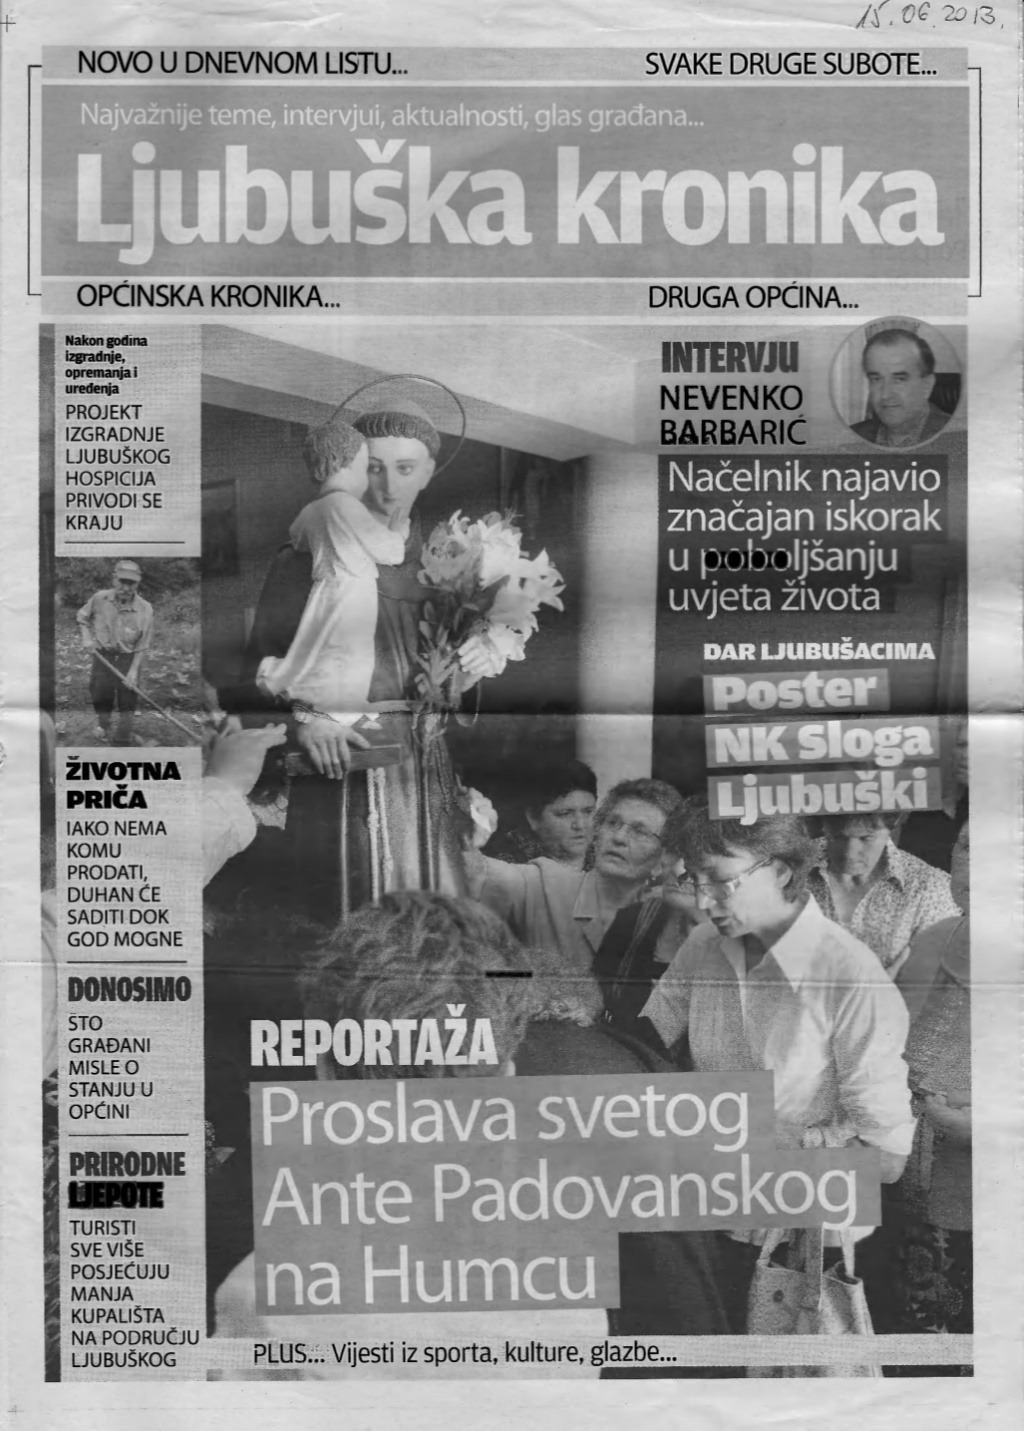 Donosimo: Ljubuška kronika, 15. lipnja 2013. godine